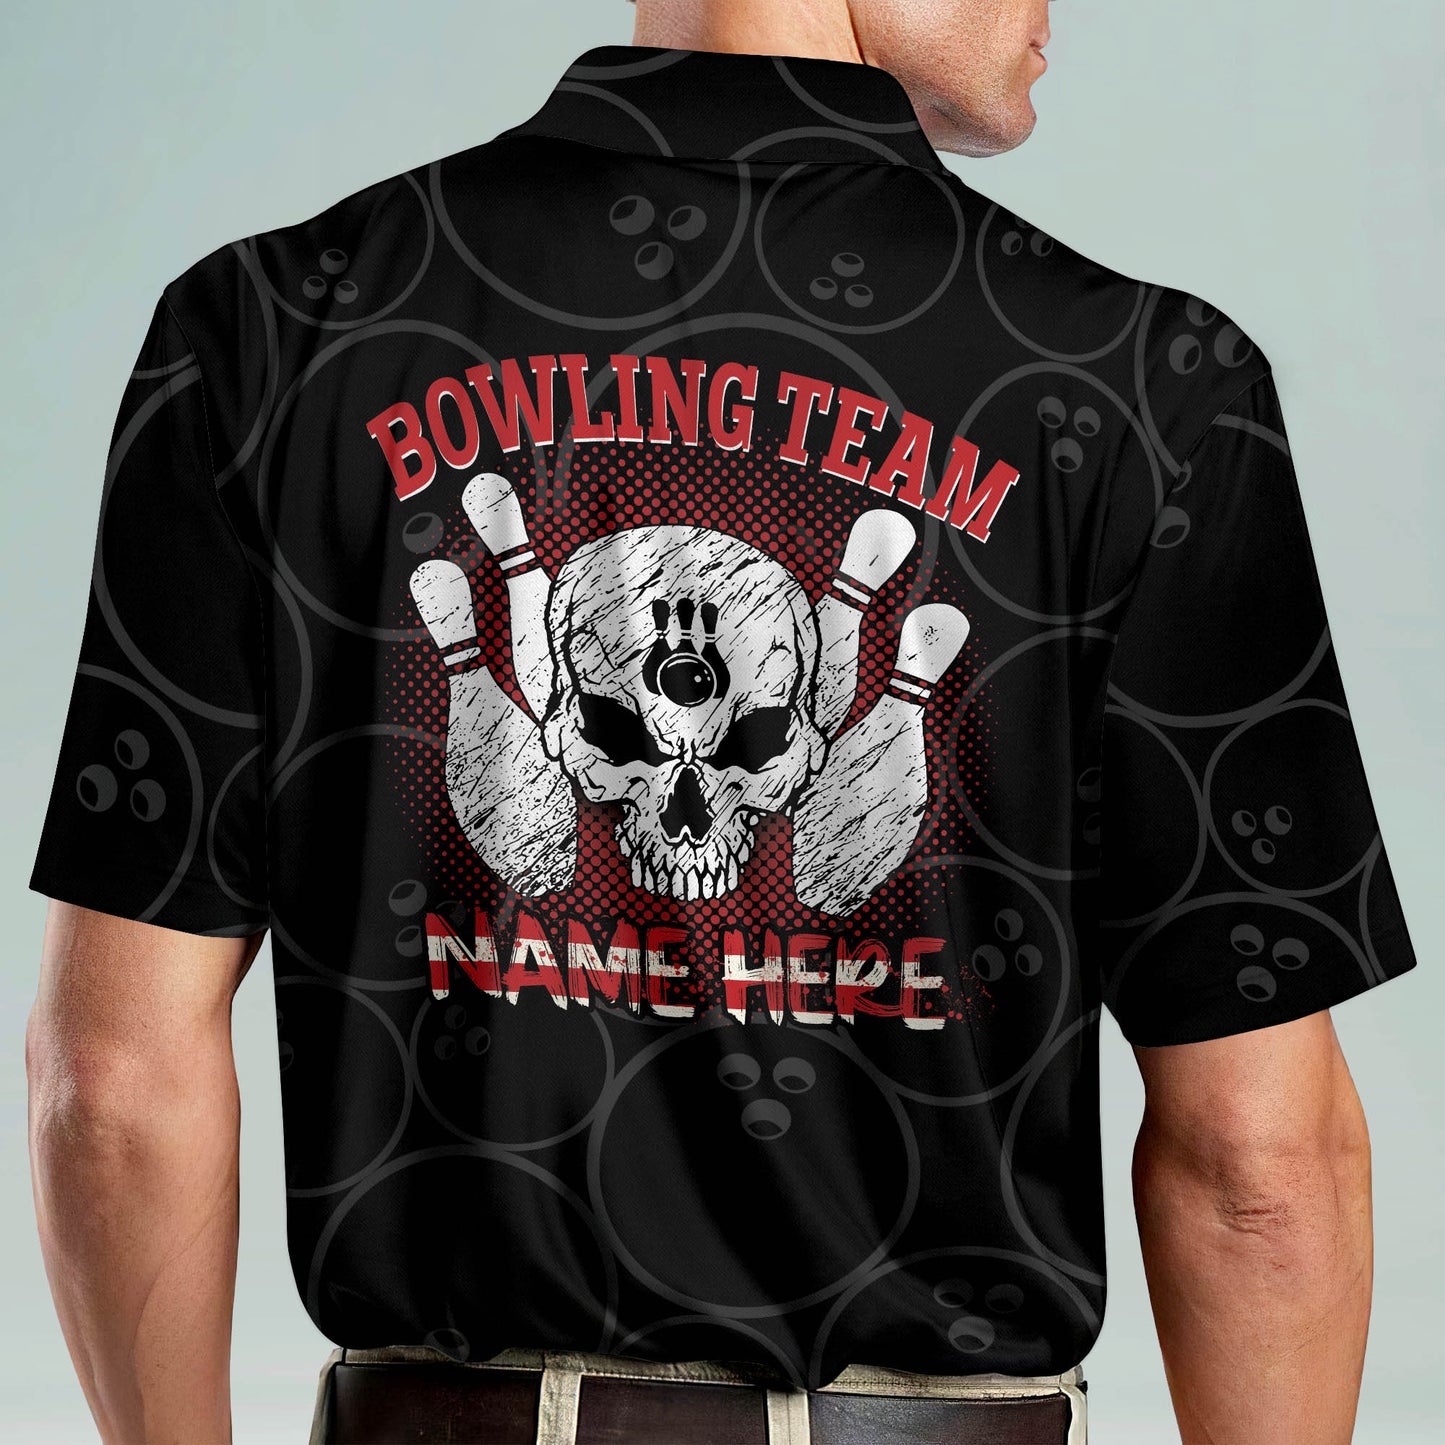 Custom American Flag Bowling Shirts BM0012